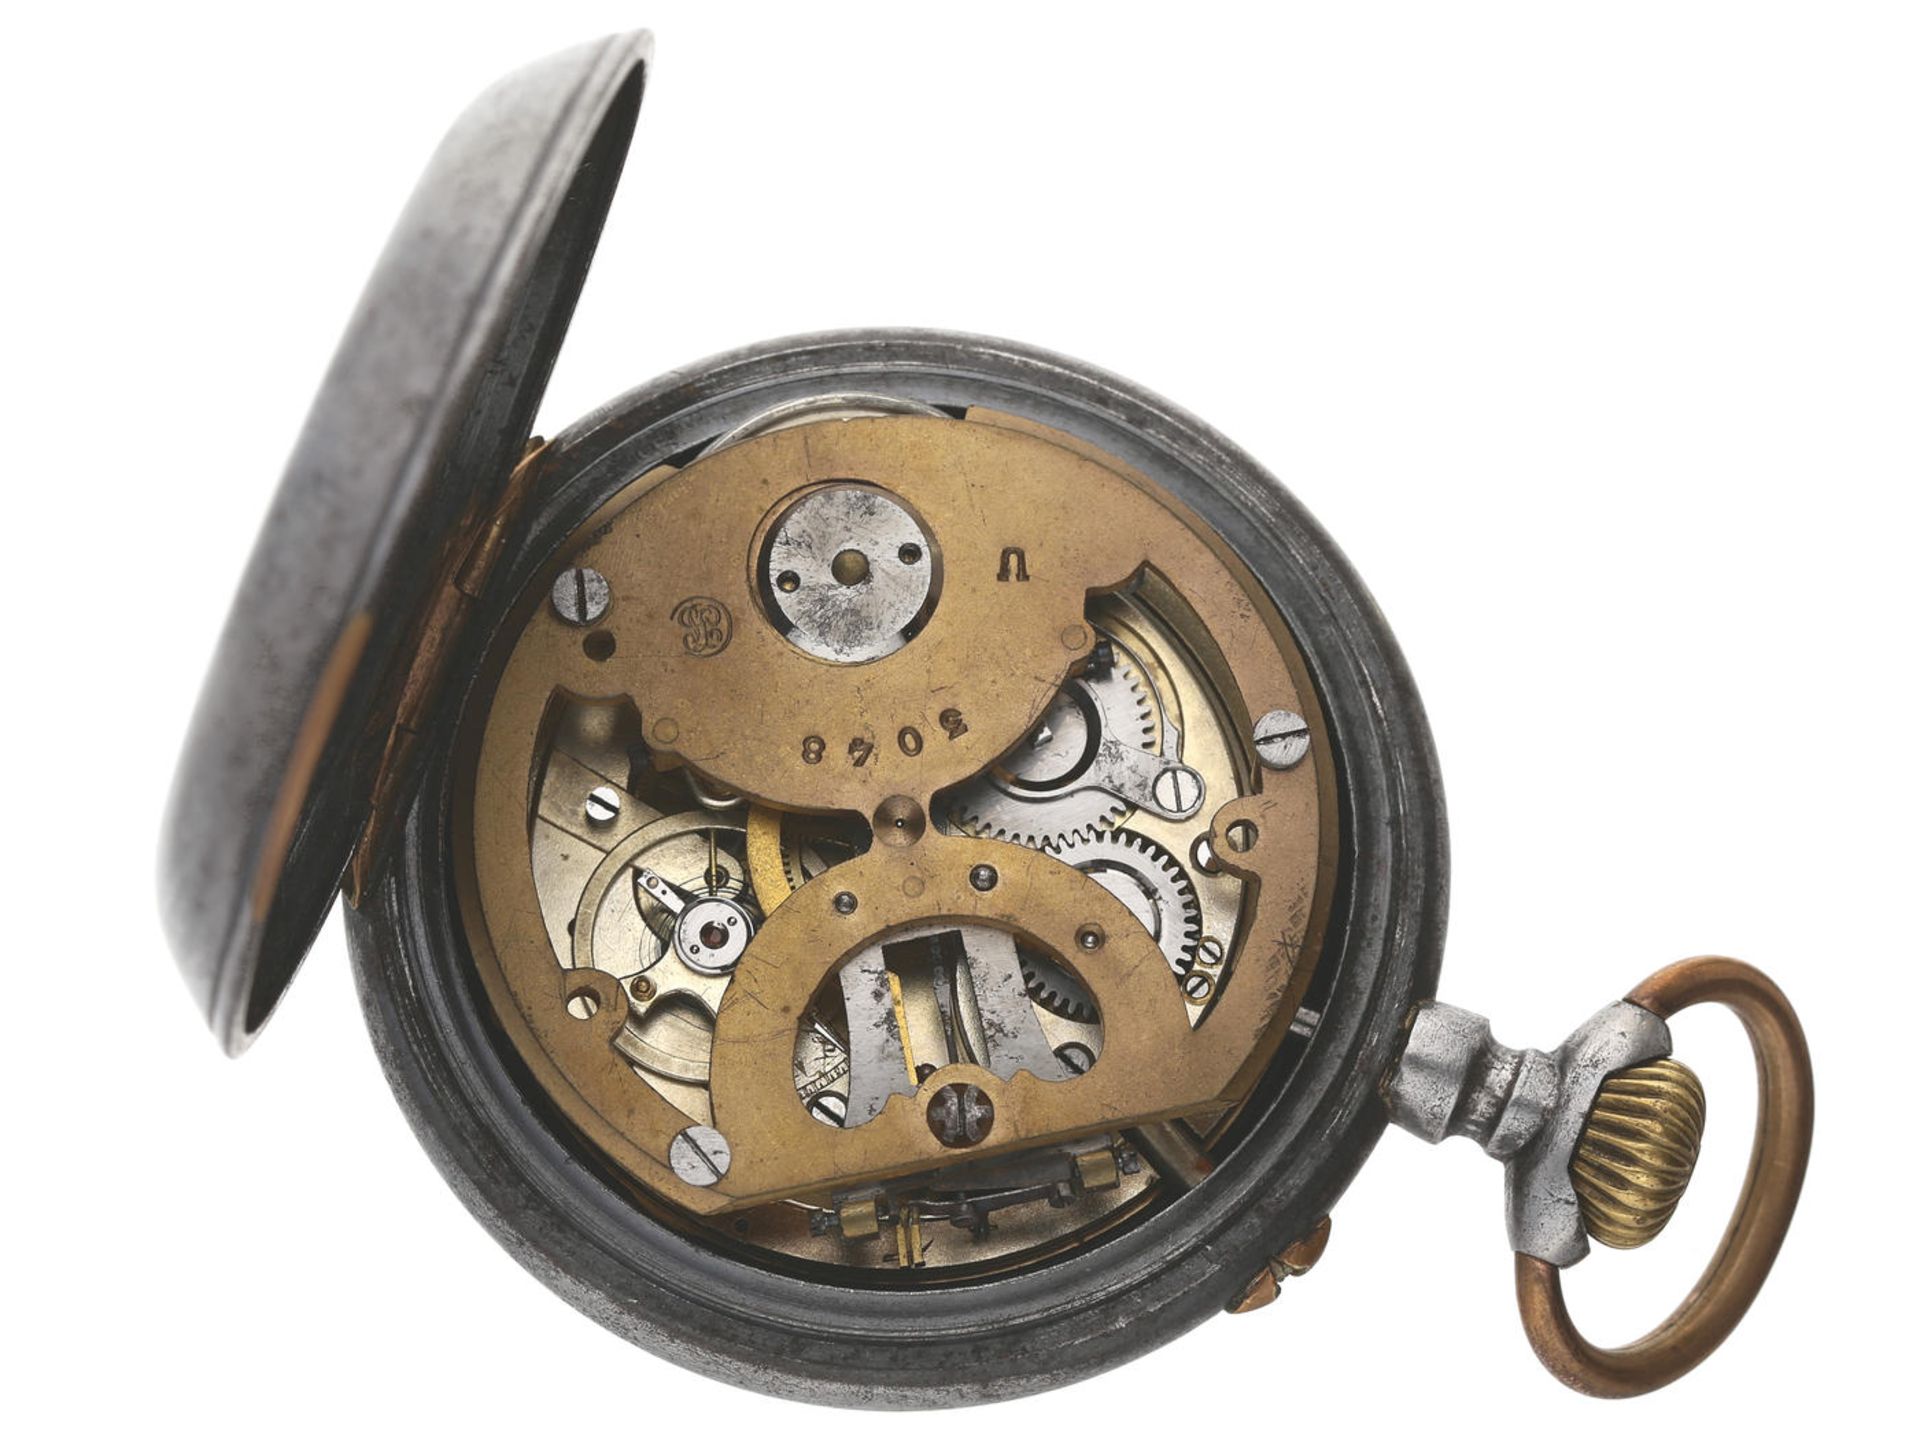 Taschenuhr: extrem seltene Taschenuhr mit Barometer, "Montre Barometre Bte. S.G.D.G.", Schweiz um - Bild 2 aus 3